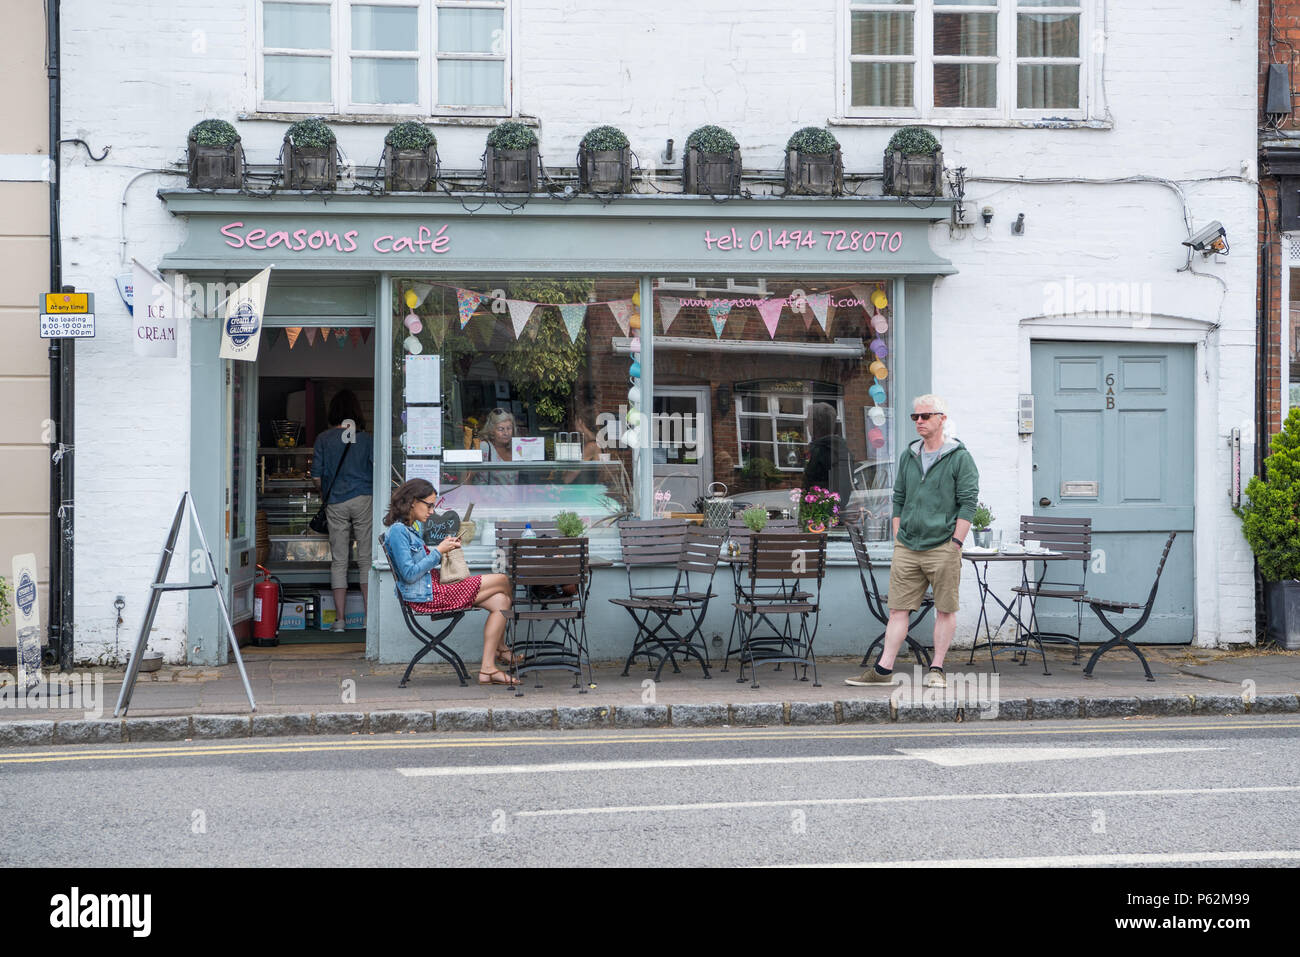 Femme assise à la table de la chaussée et l'homme debout à l'extérieur de Seasons Cafe Deli dans la place du marché, la vieille ville, Amersham Buckinghamshire, Angleterre, Royaume-Uni Banque D'Images